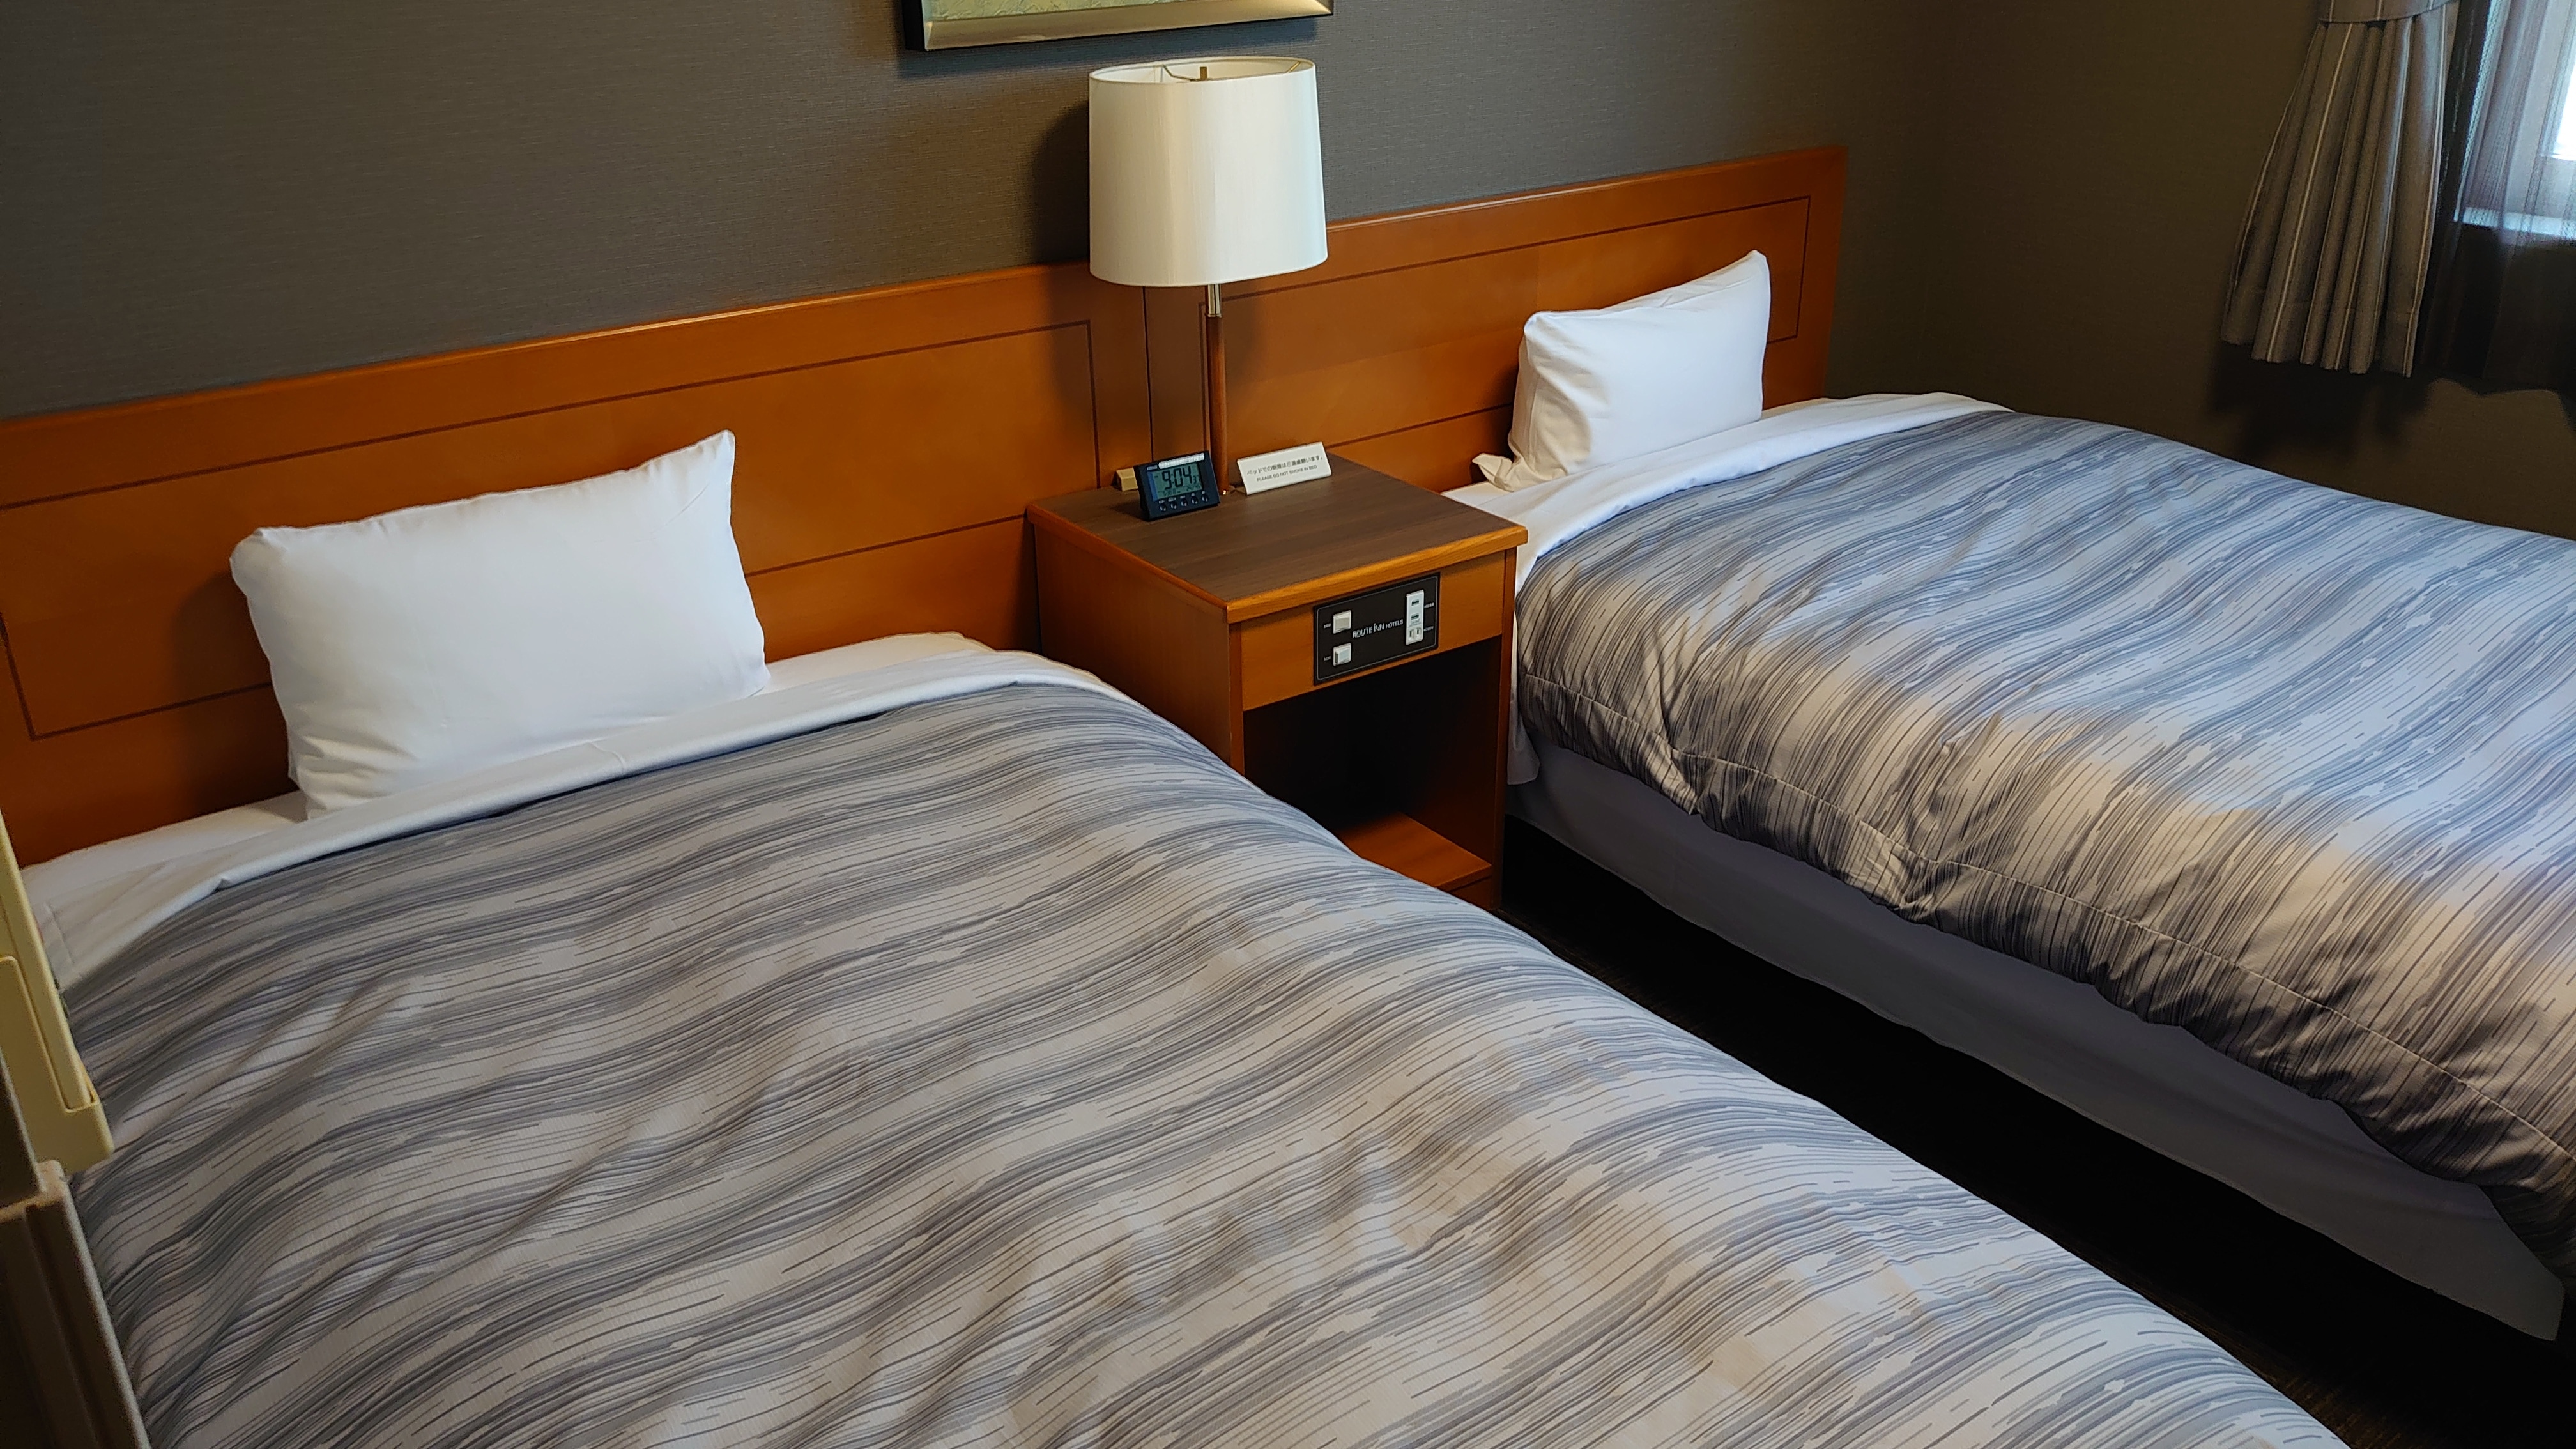 雙床房 床尺寸 120 × 196 (cm) 約 15 平方米的房間，配備 2 張床。